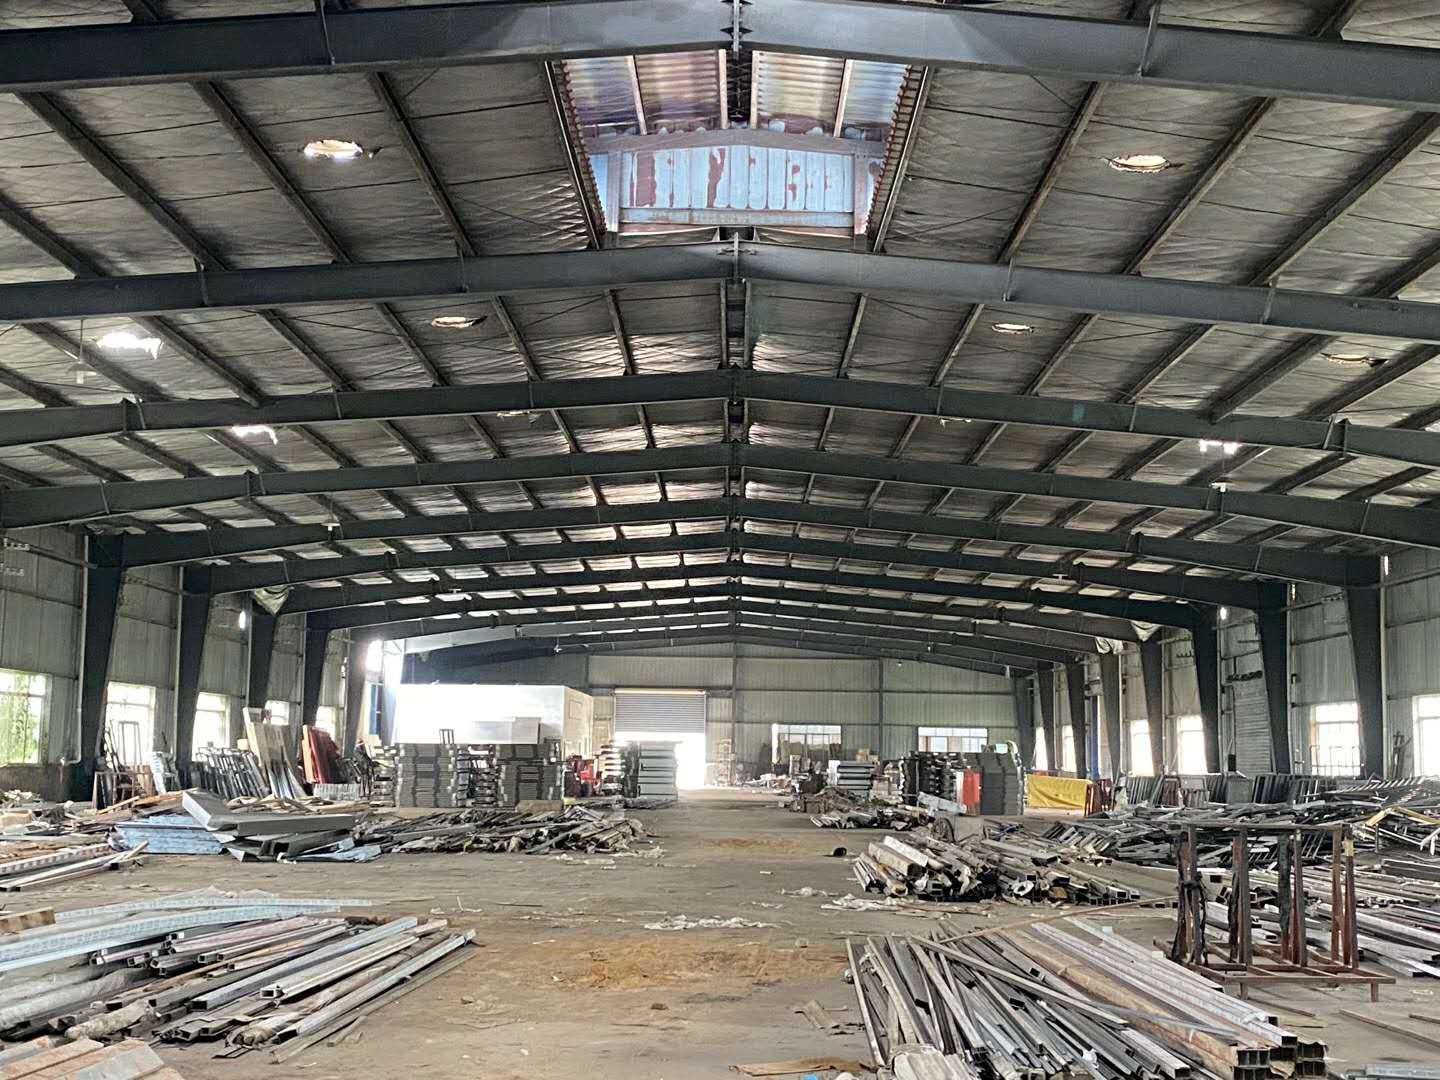 深圳南山区钢结构厂房回收,钢结构厂棚拆除回收公司